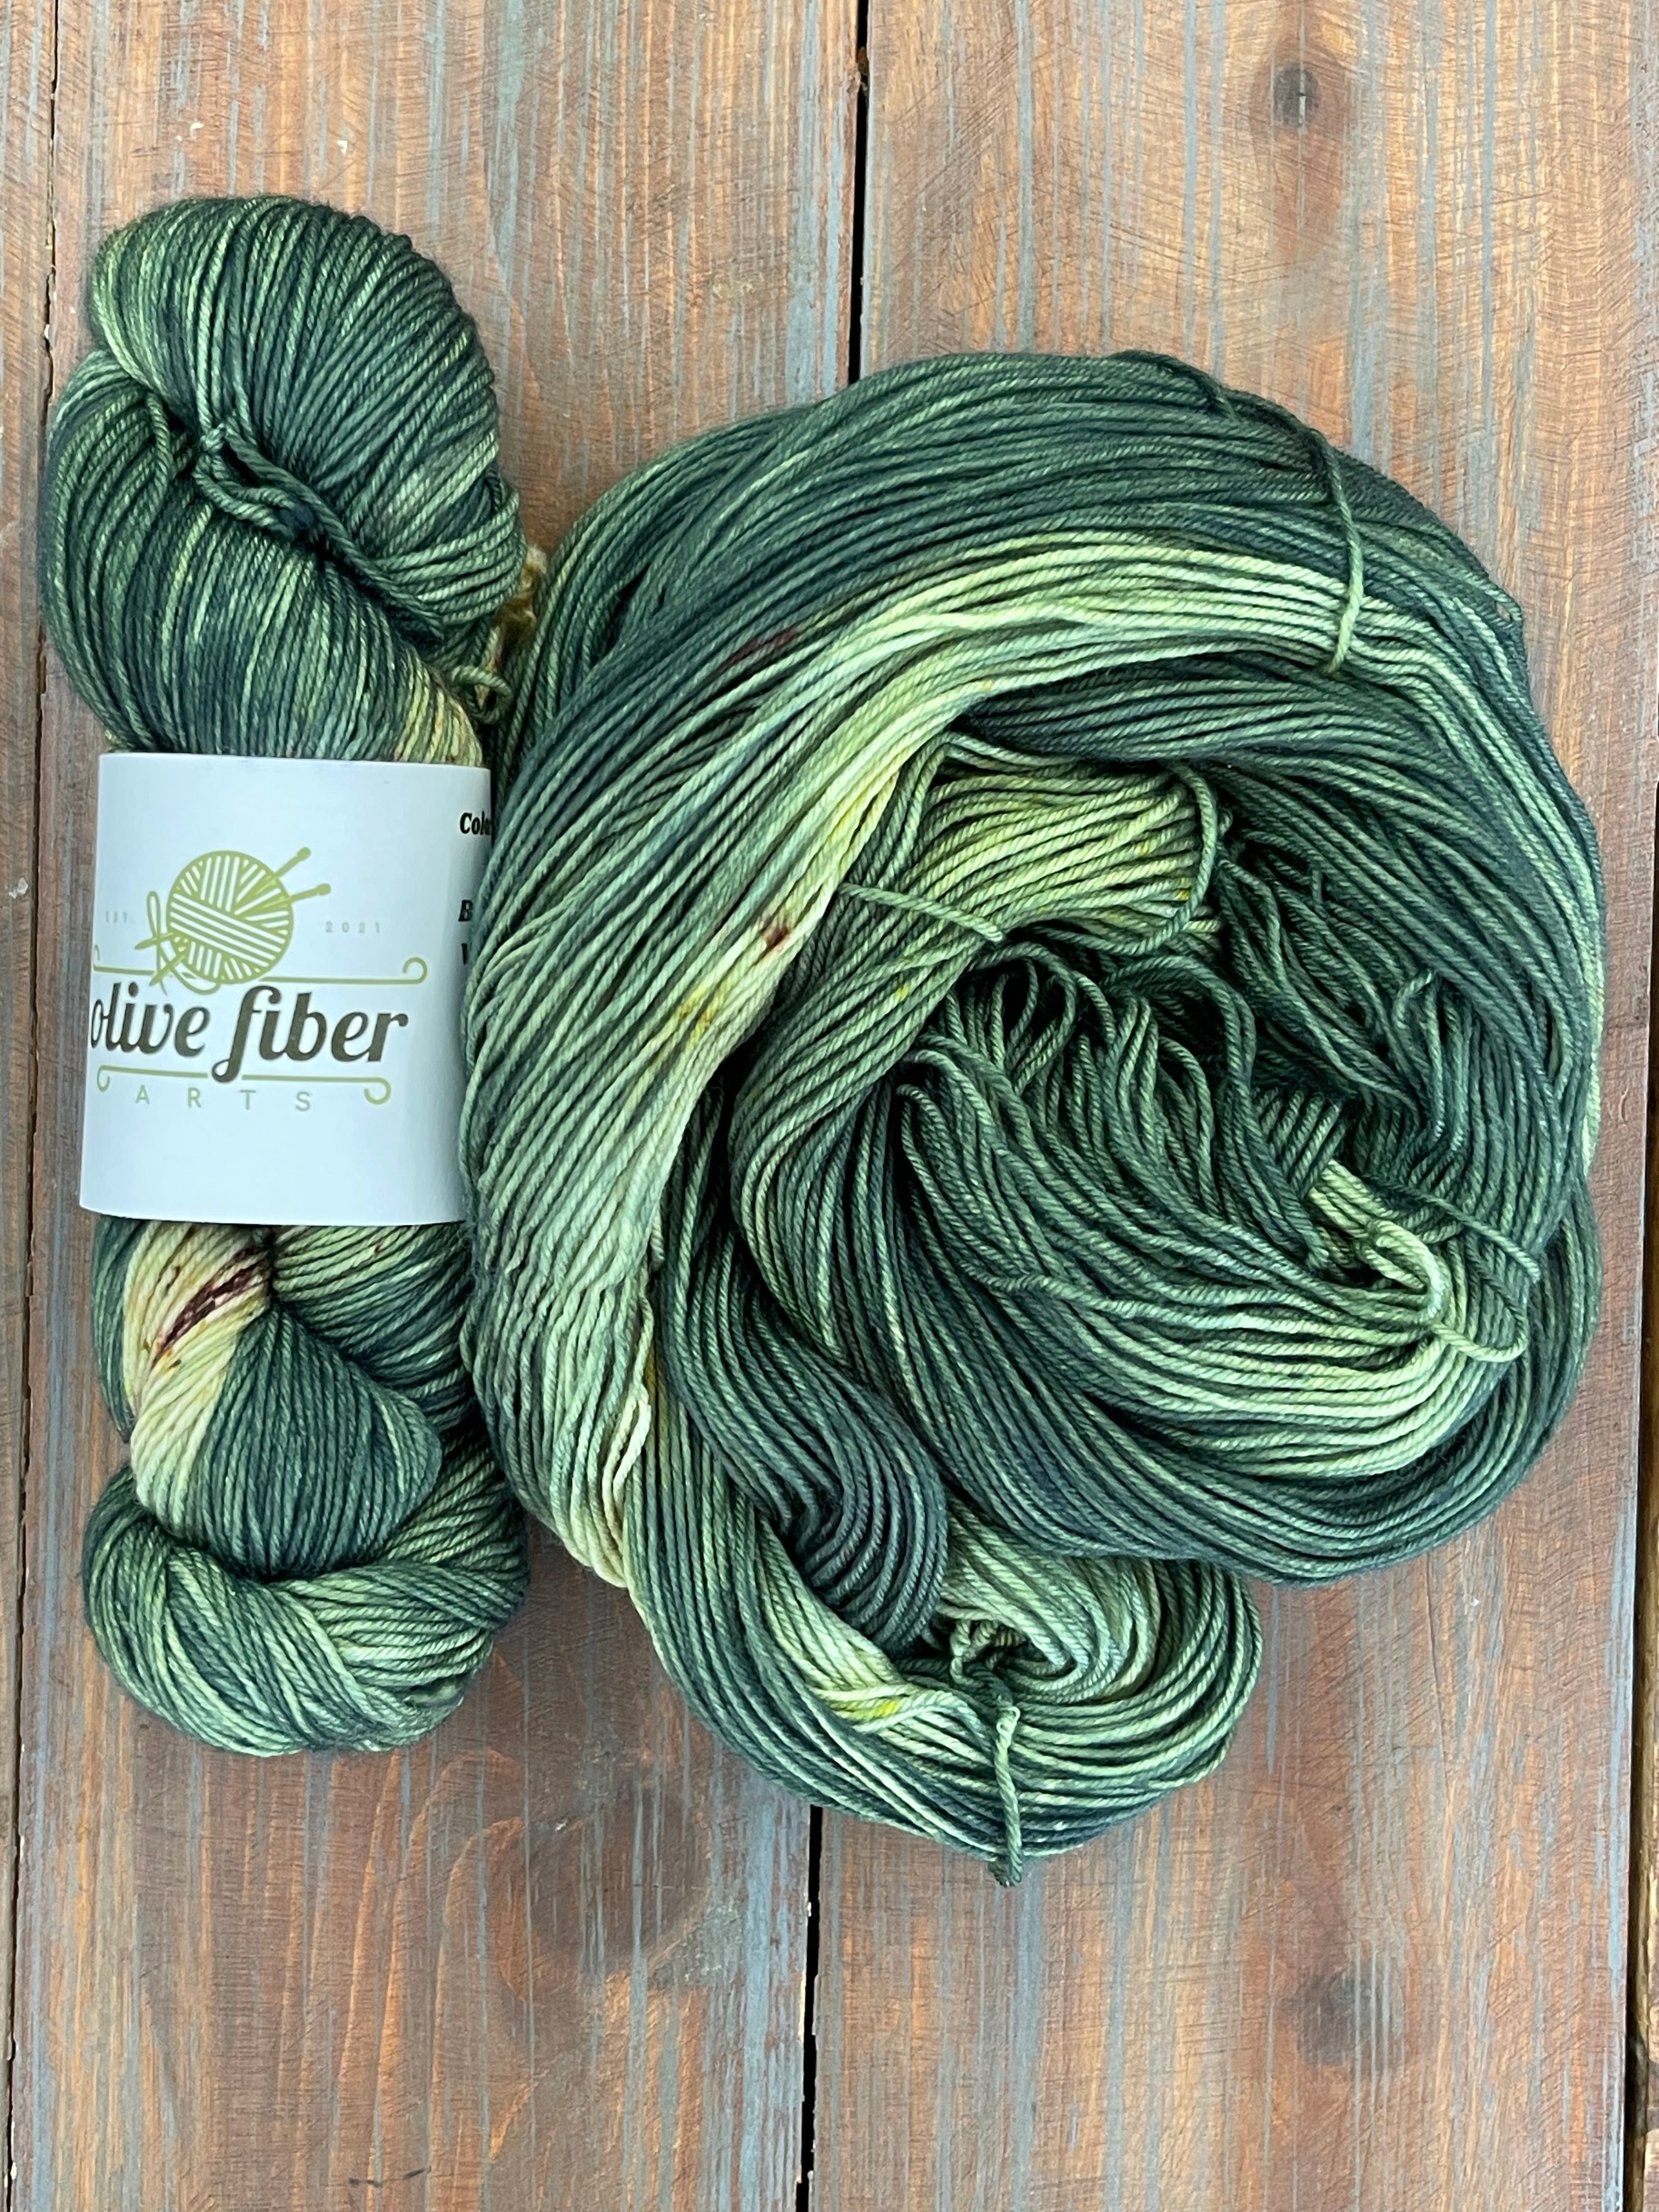 Olive Fiber Arts – The Knitting Tree, L.A.